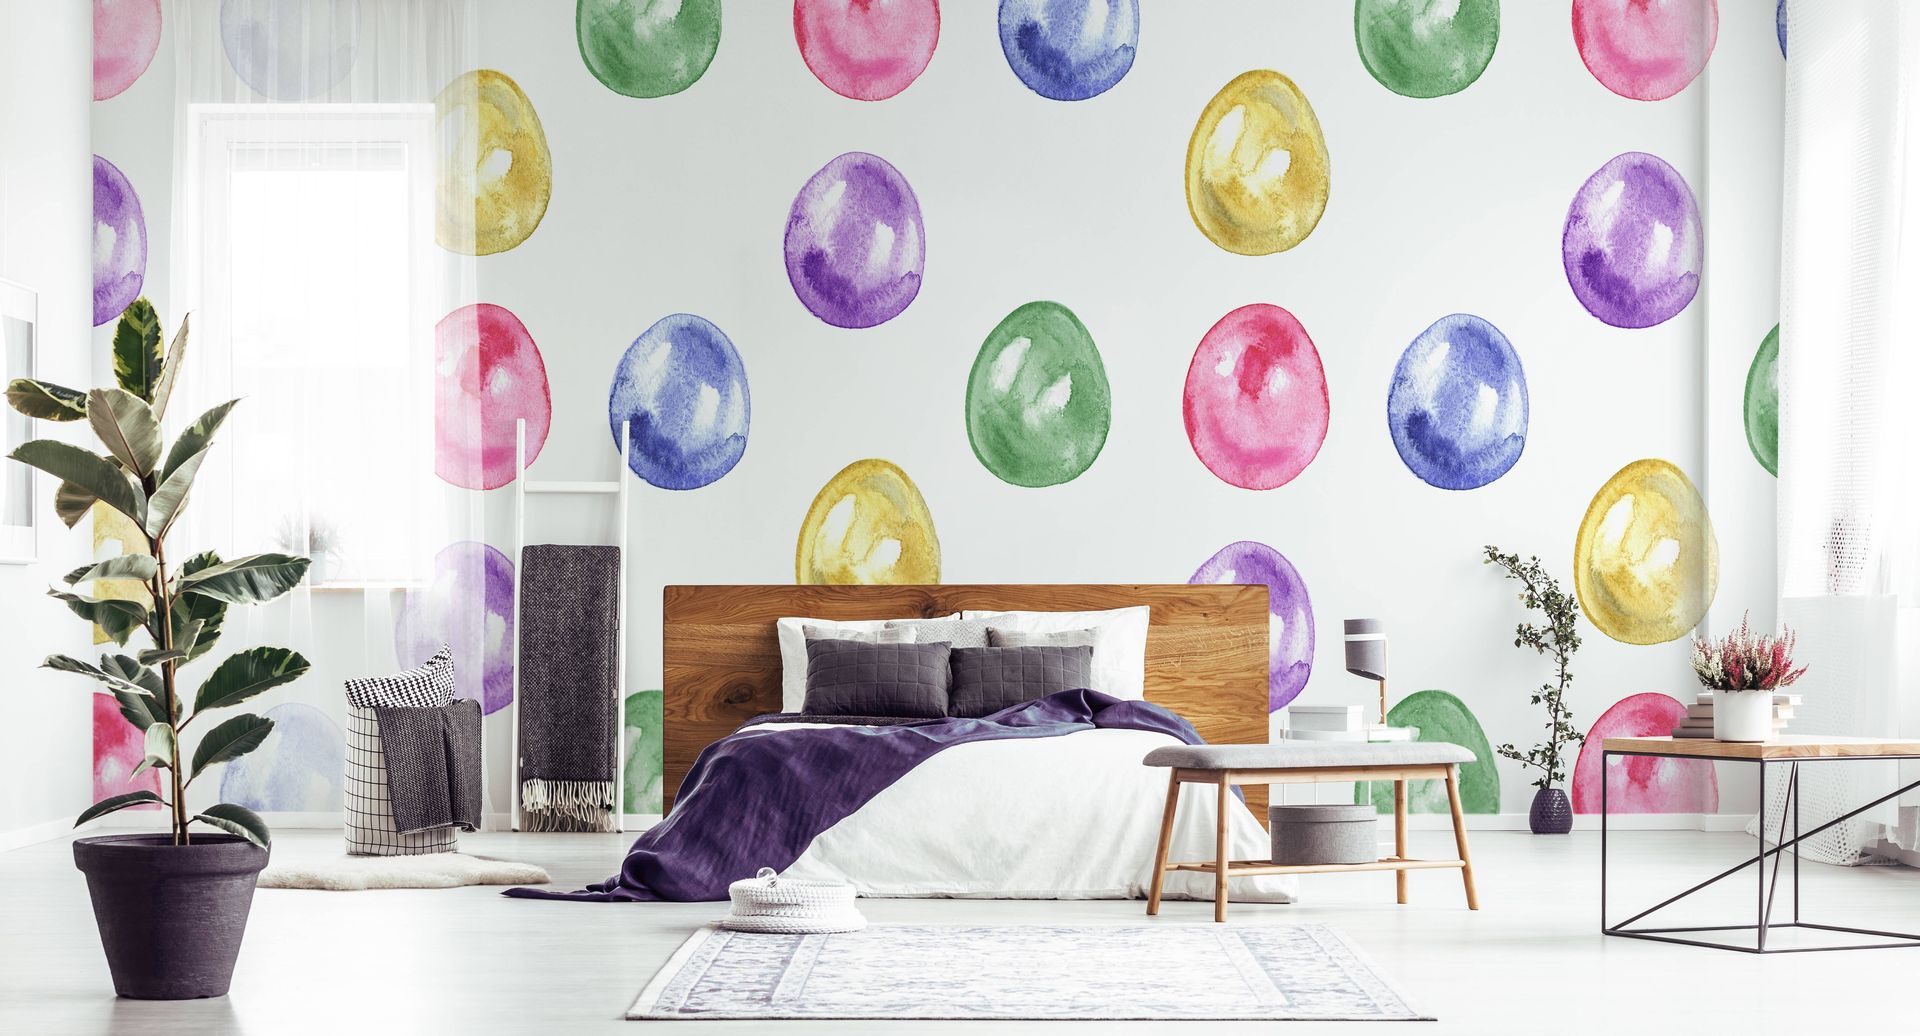 EASTER EGGS Pixers Scandinavian style bedroom easter,bedroom,colors